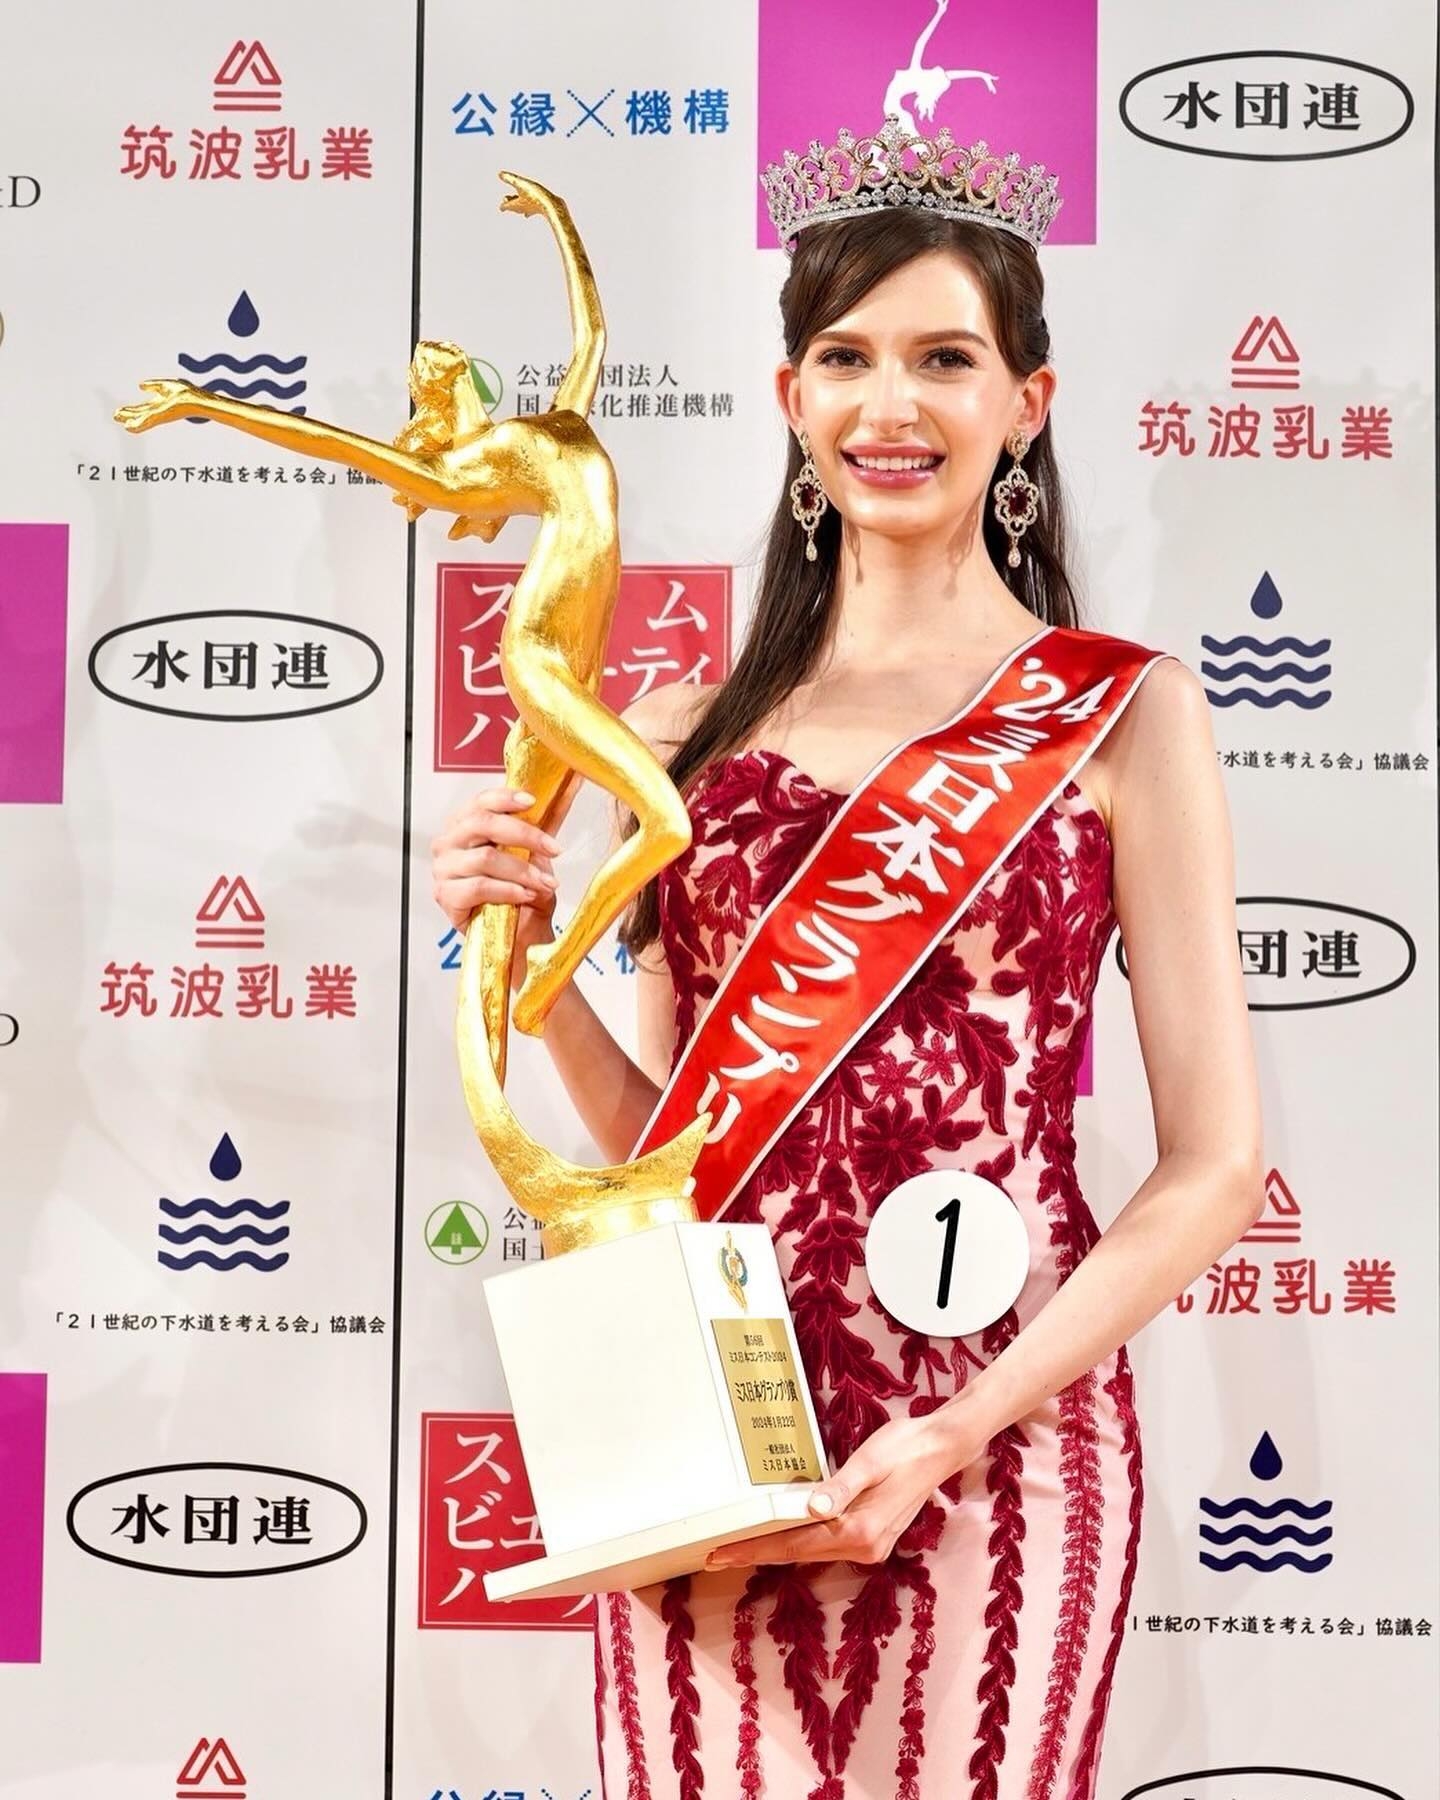 烏克蘭模特兒贏「日本選美冠軍」惹爭議  因一件事參賽 得獎感言有洋蔥